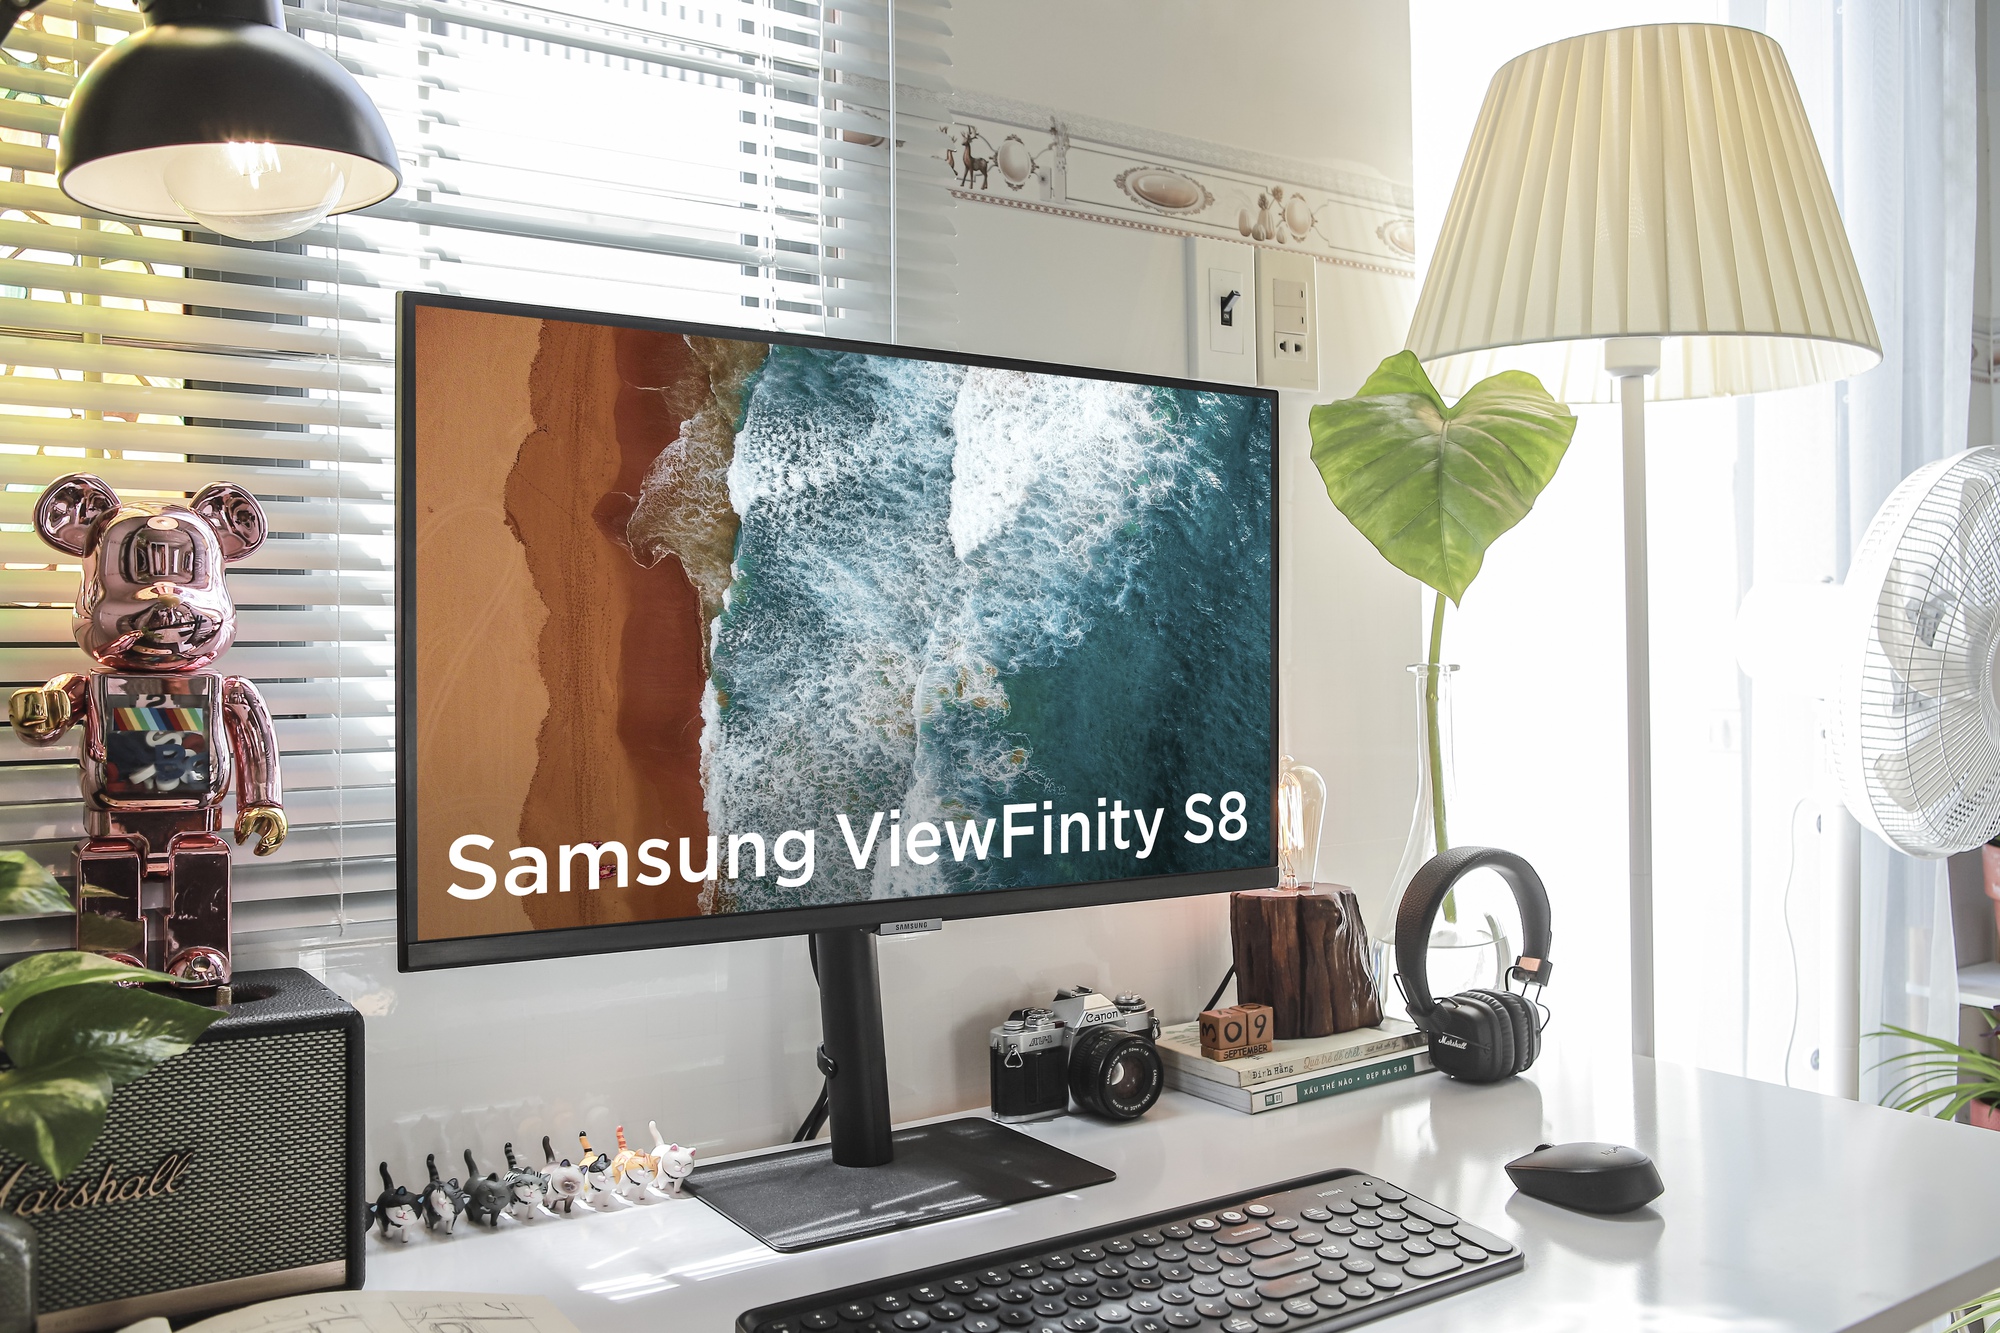 Dân sáng tạo nói gì về màn hình siêu hiệu suất Samsung ViewFinity S8? - Ảnh 2.